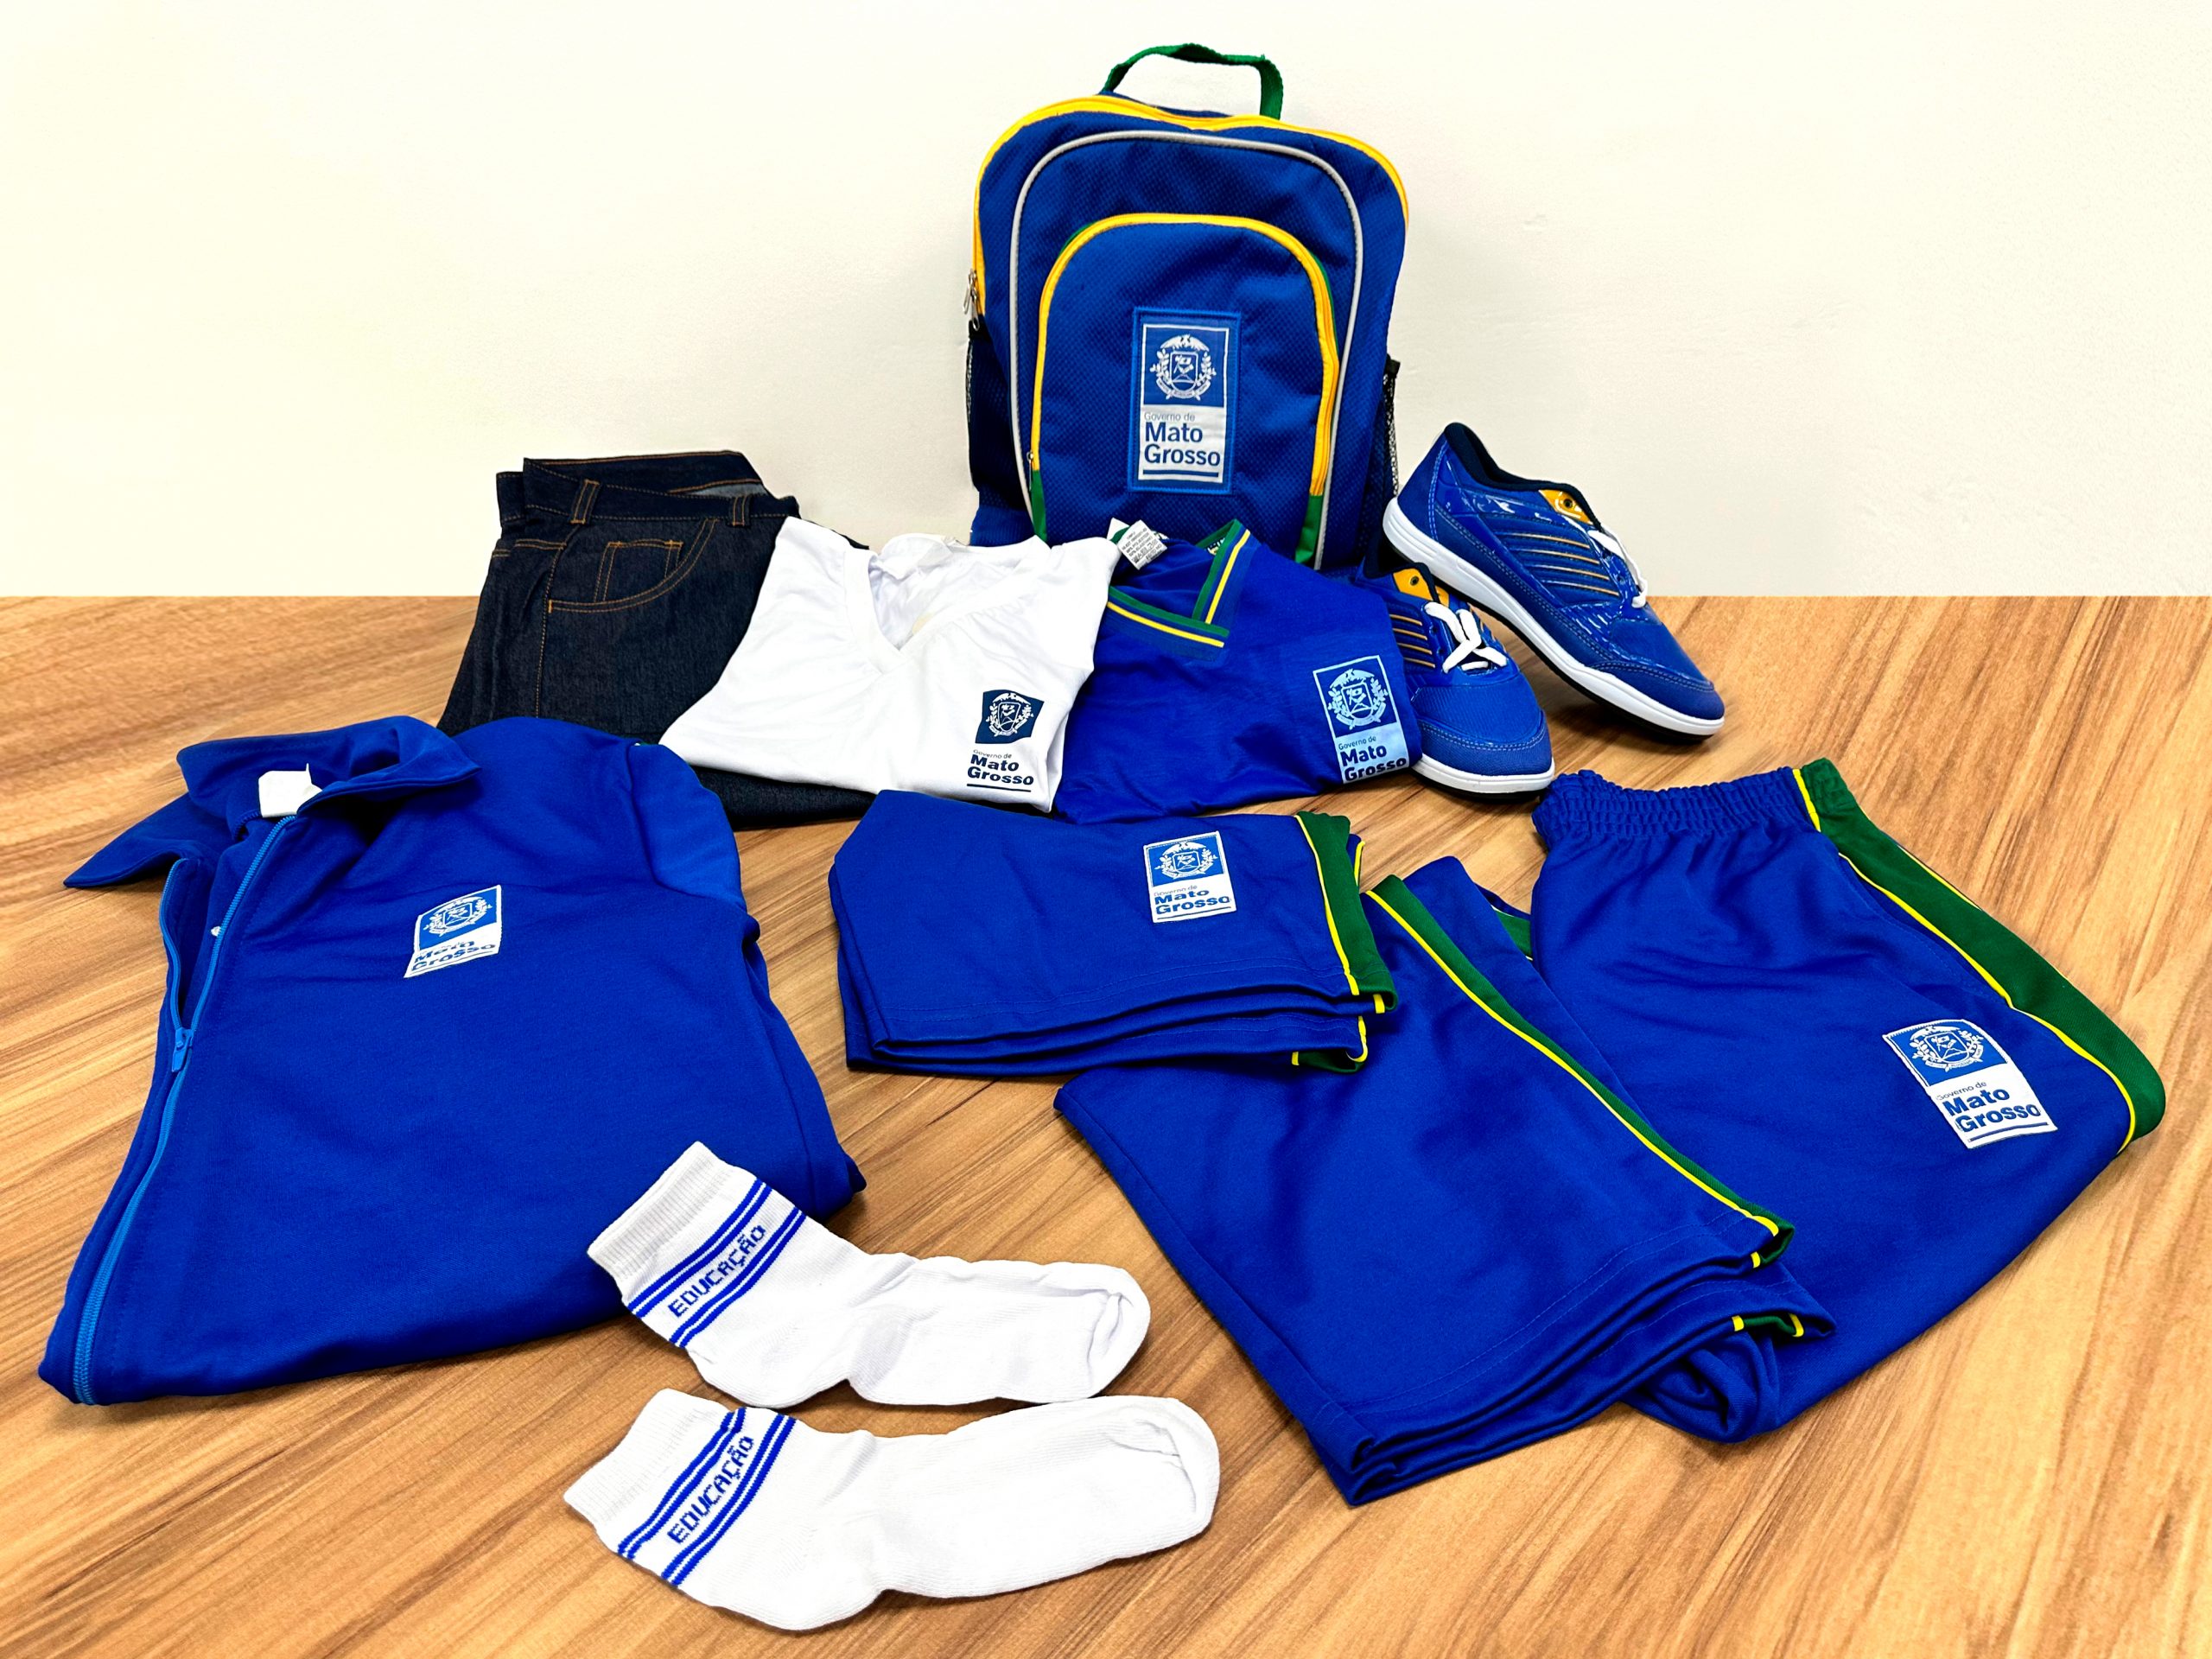 Governo de MT entregará uniformes e materiais escolares a estudantes em fevereiro